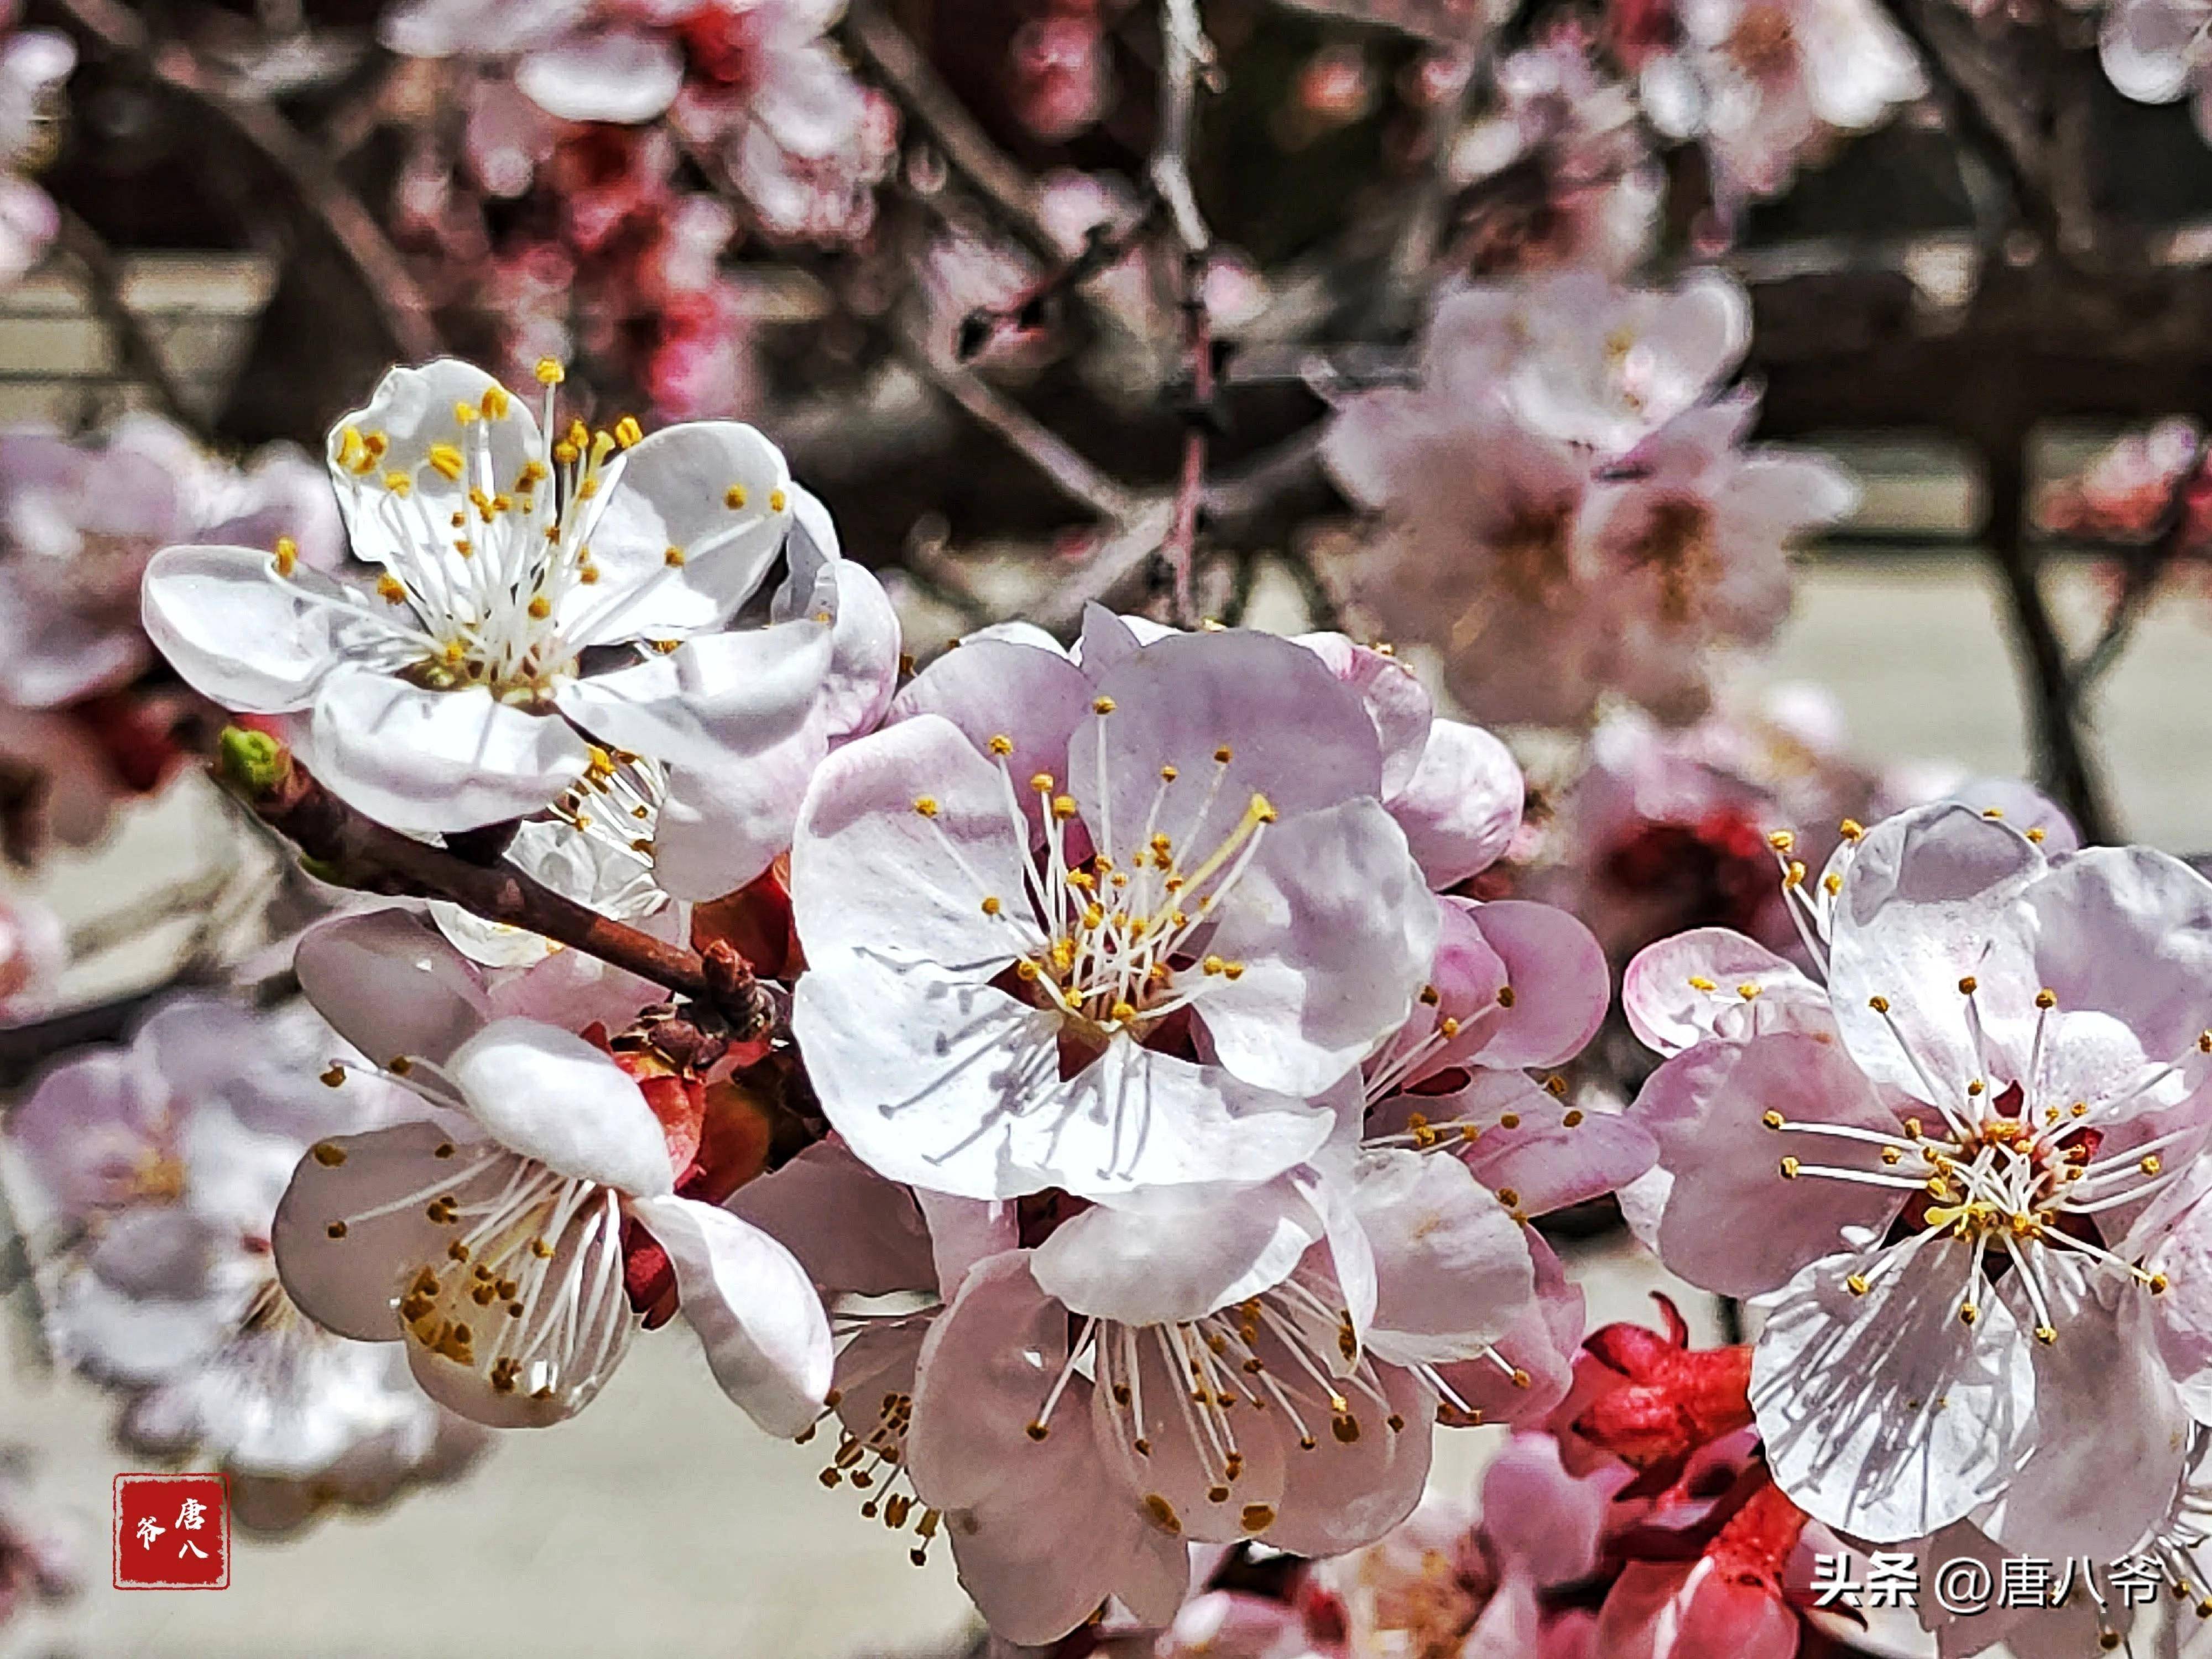 春天人们在粉白色杏花中尽情呼吸,享受醉人的风景